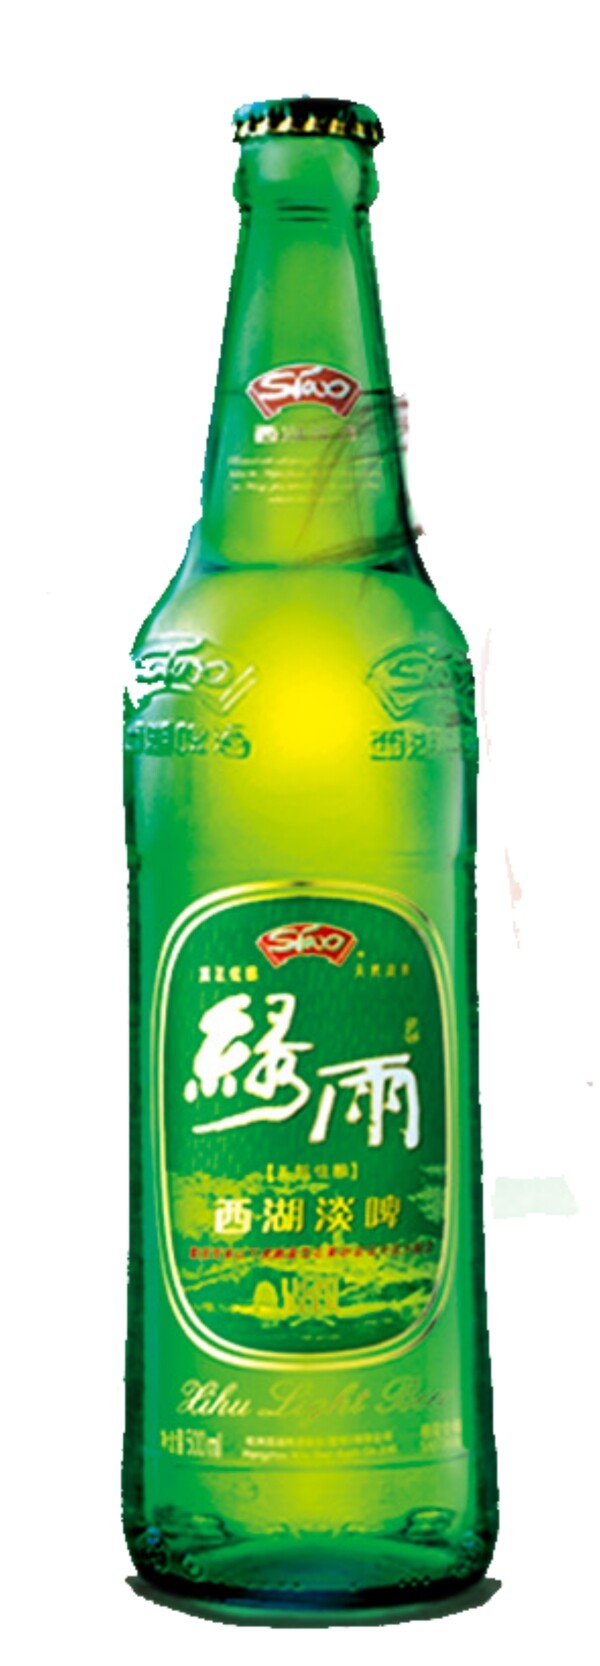 绿雨啤酒图片